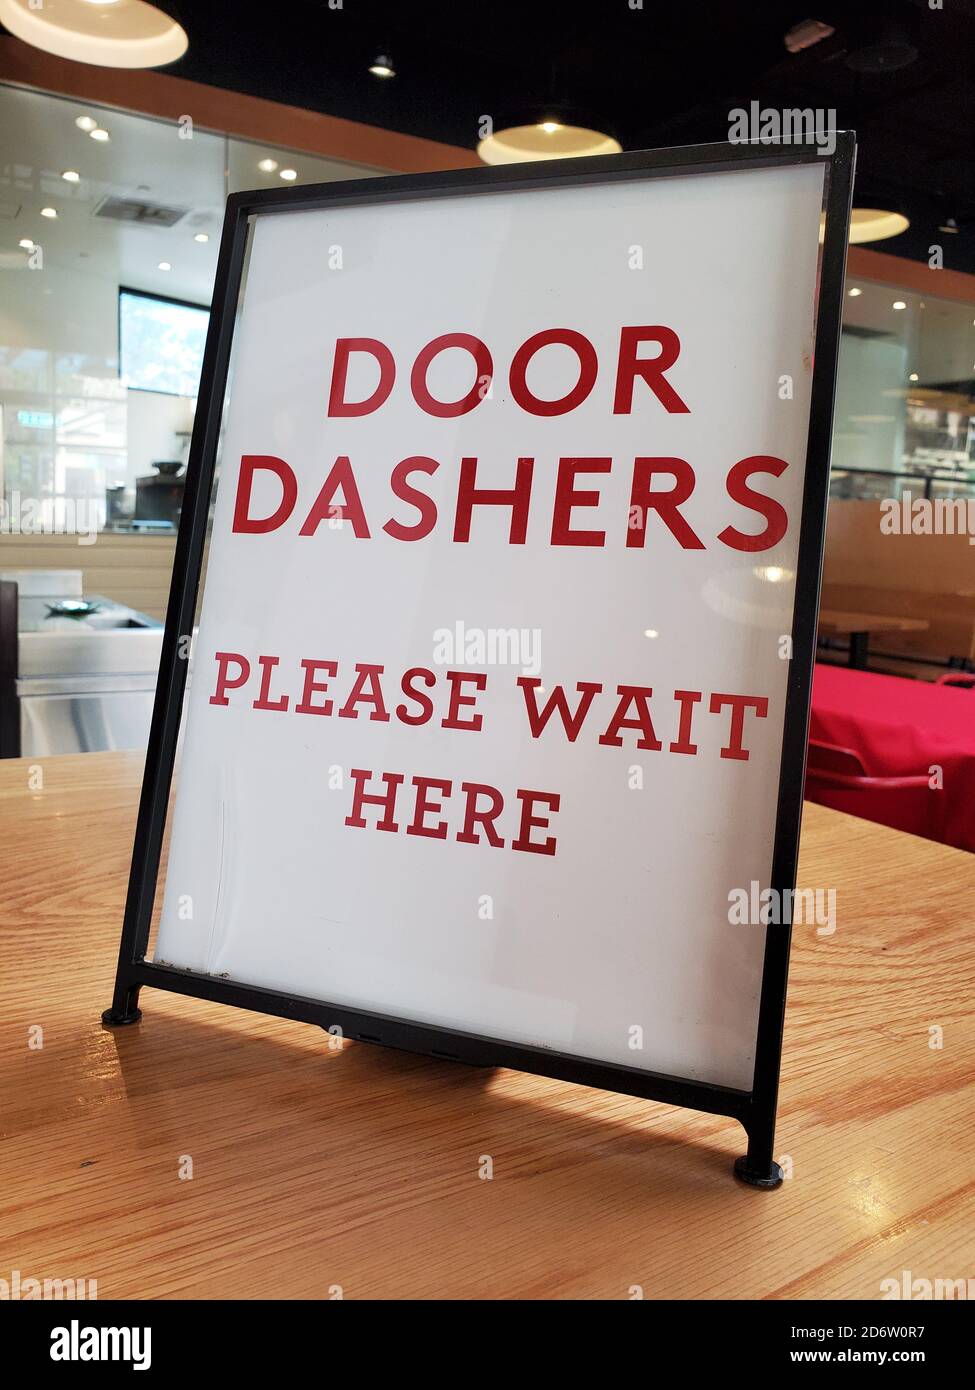 Gros plan de la lecture de panneaux Dashers de porte Veuillez attendre ici, en référence au service de livraison de nourriture Doordash, dans un restaurant à Walnut Creek, Californie, le 7 septembre 2020. () Banque D'Images